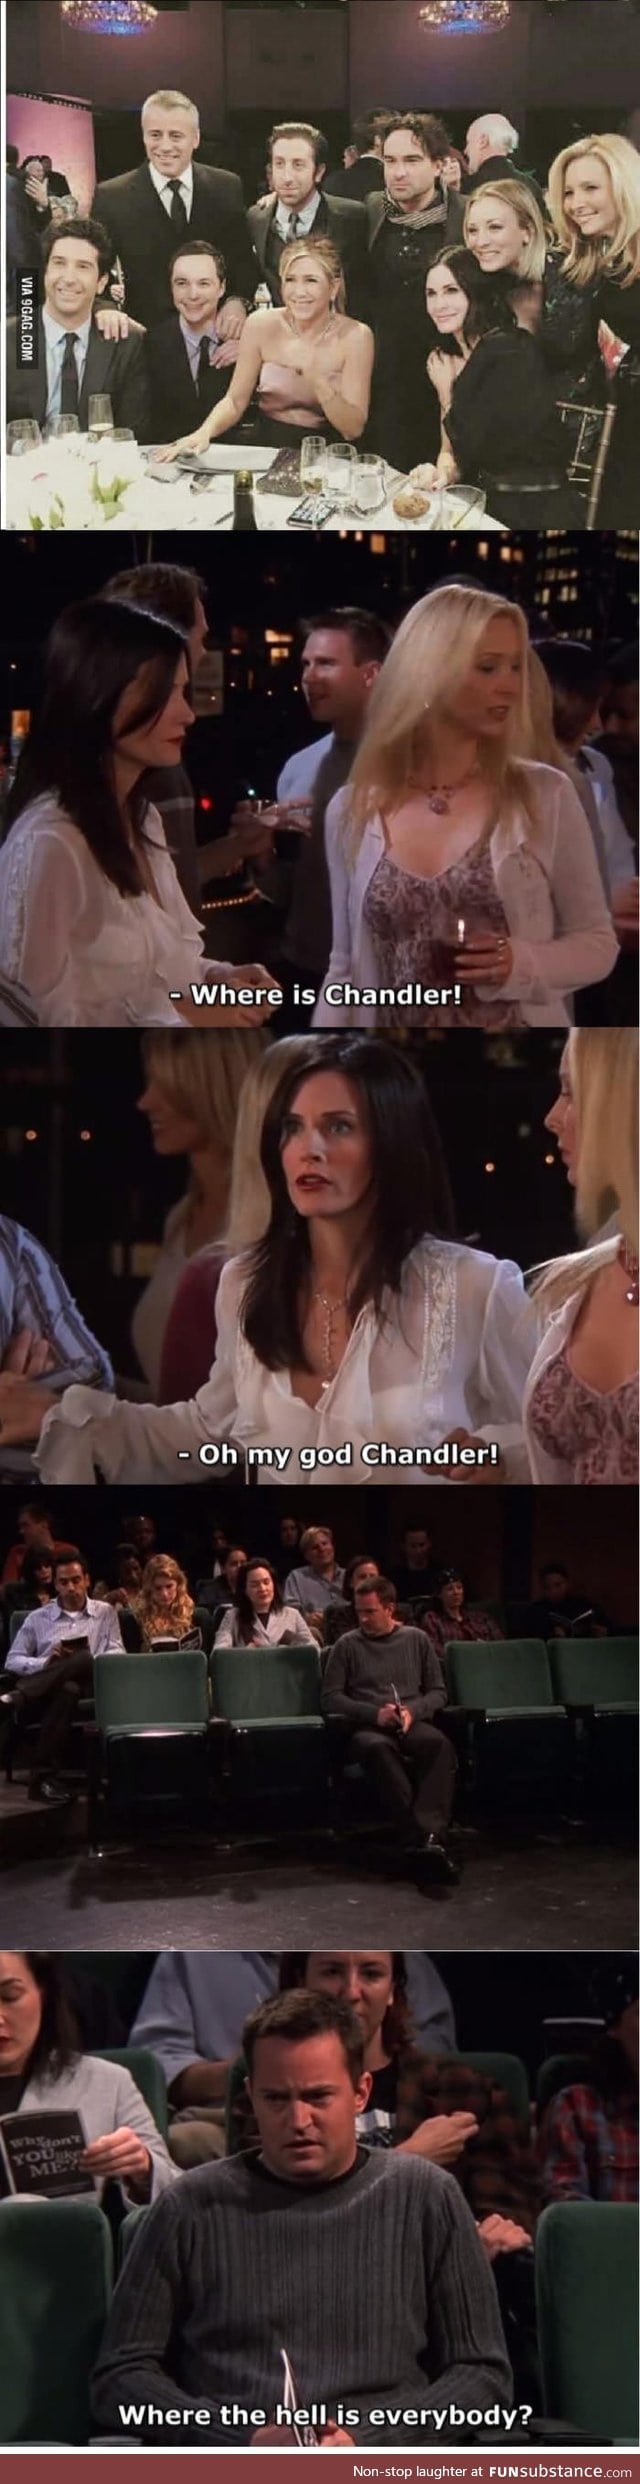 Poor chandler